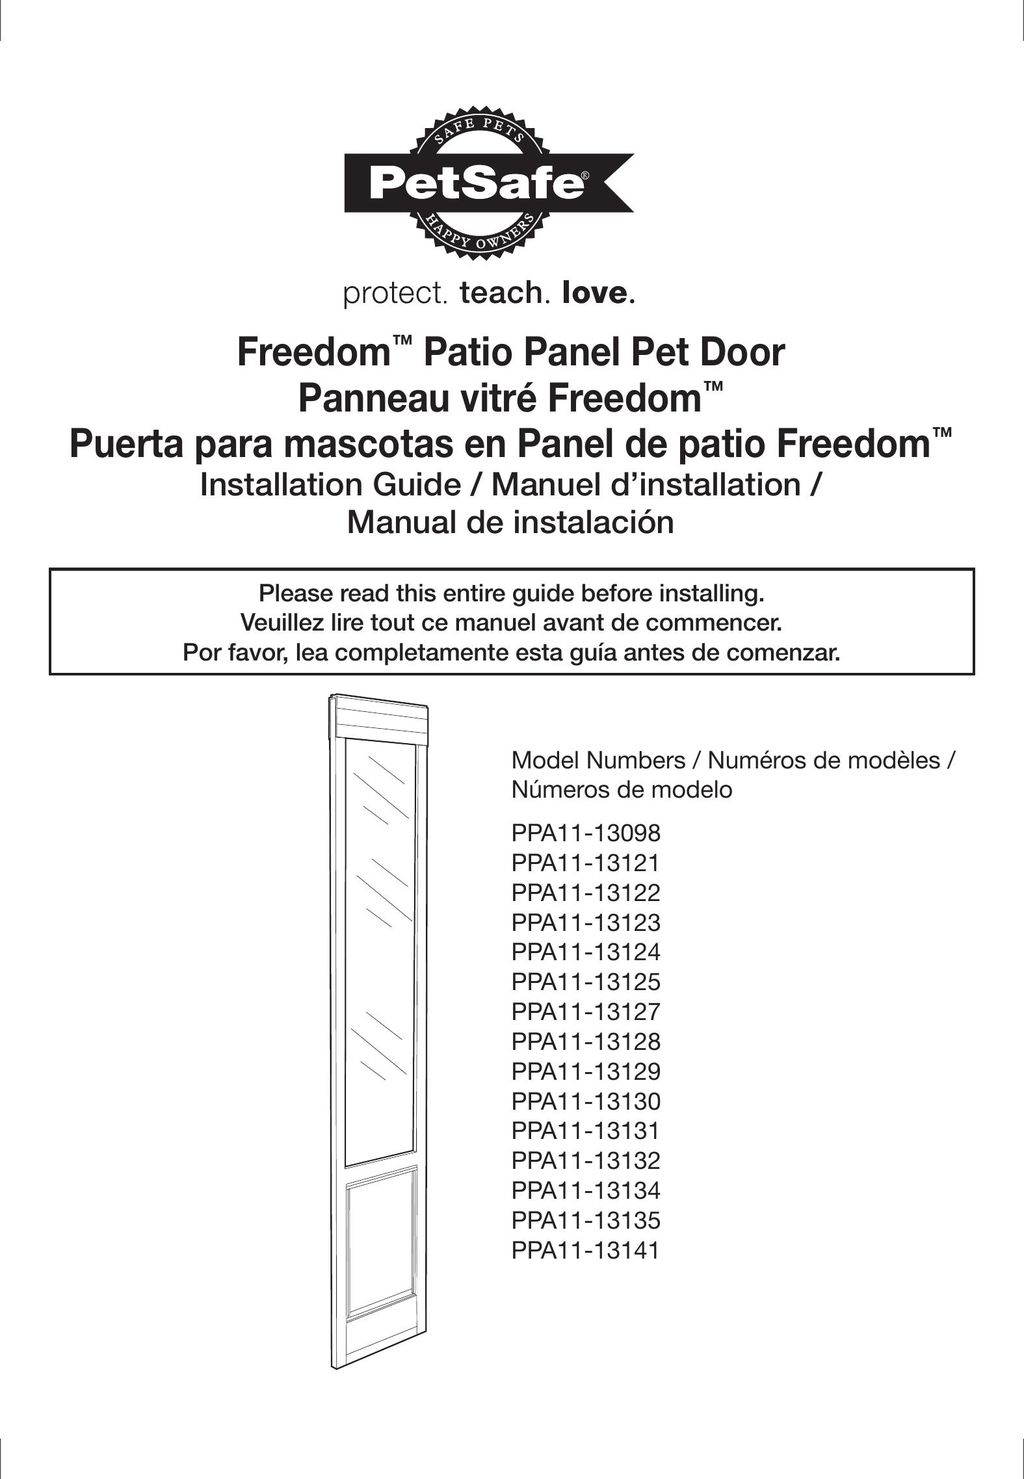 Petsafe PPA11-13141 Door User Manual